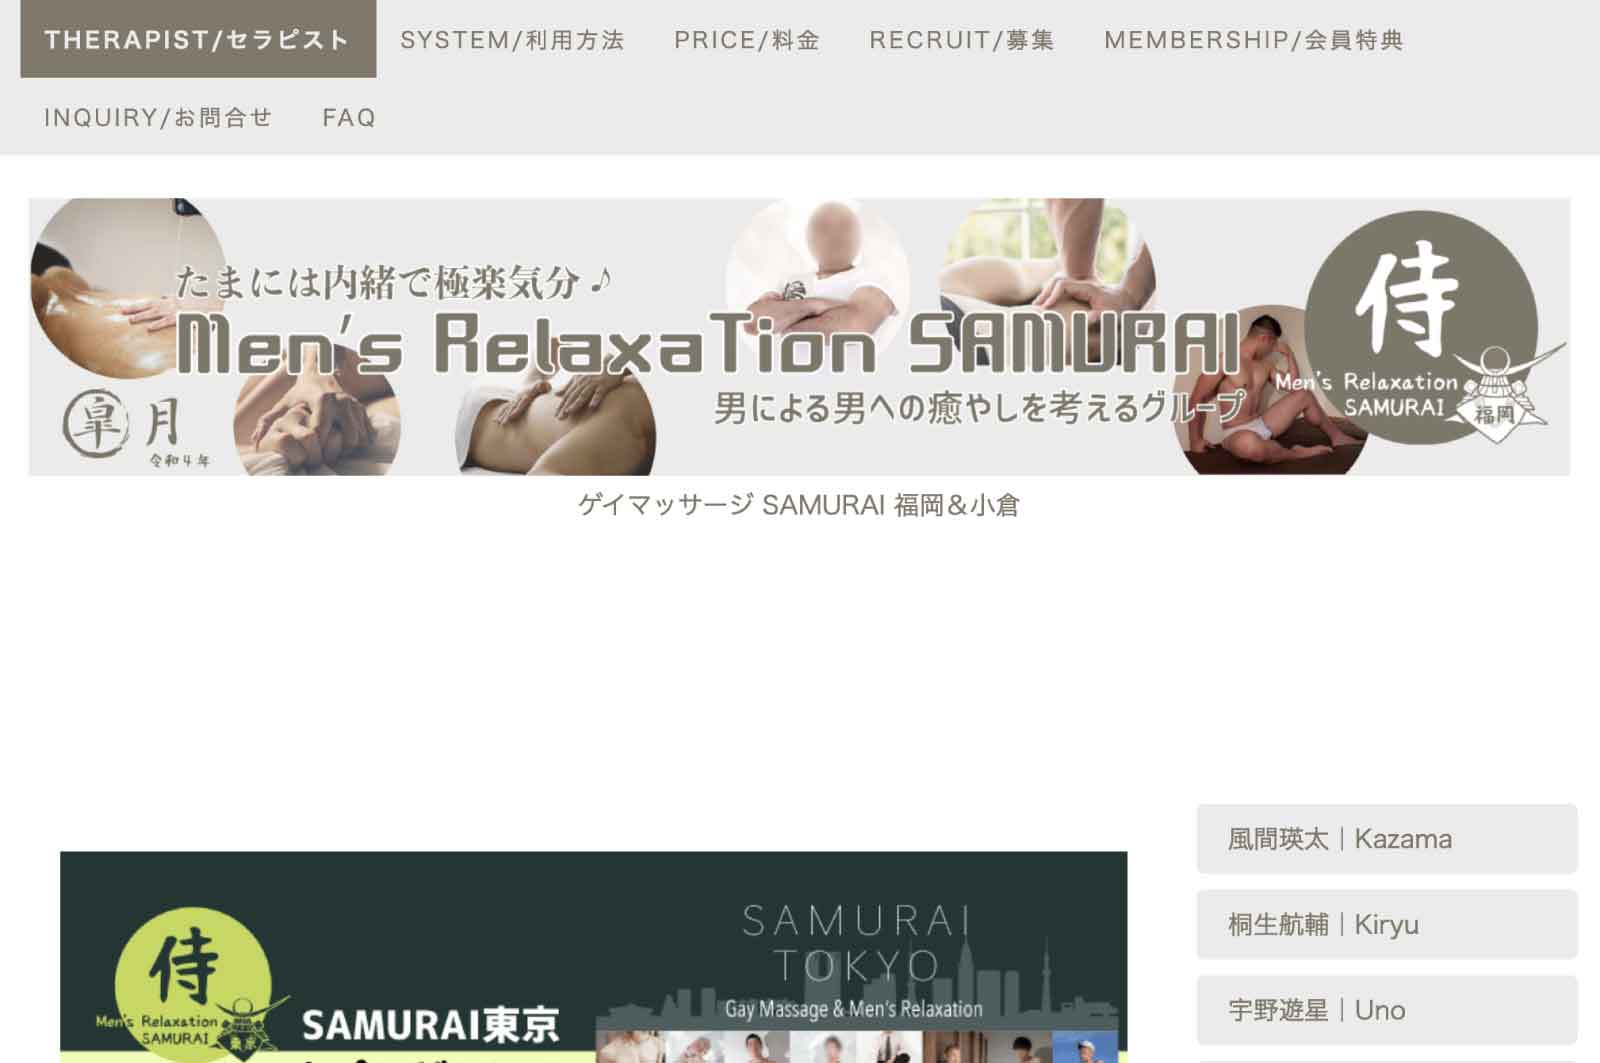 Men's Relaxation SAMURAI